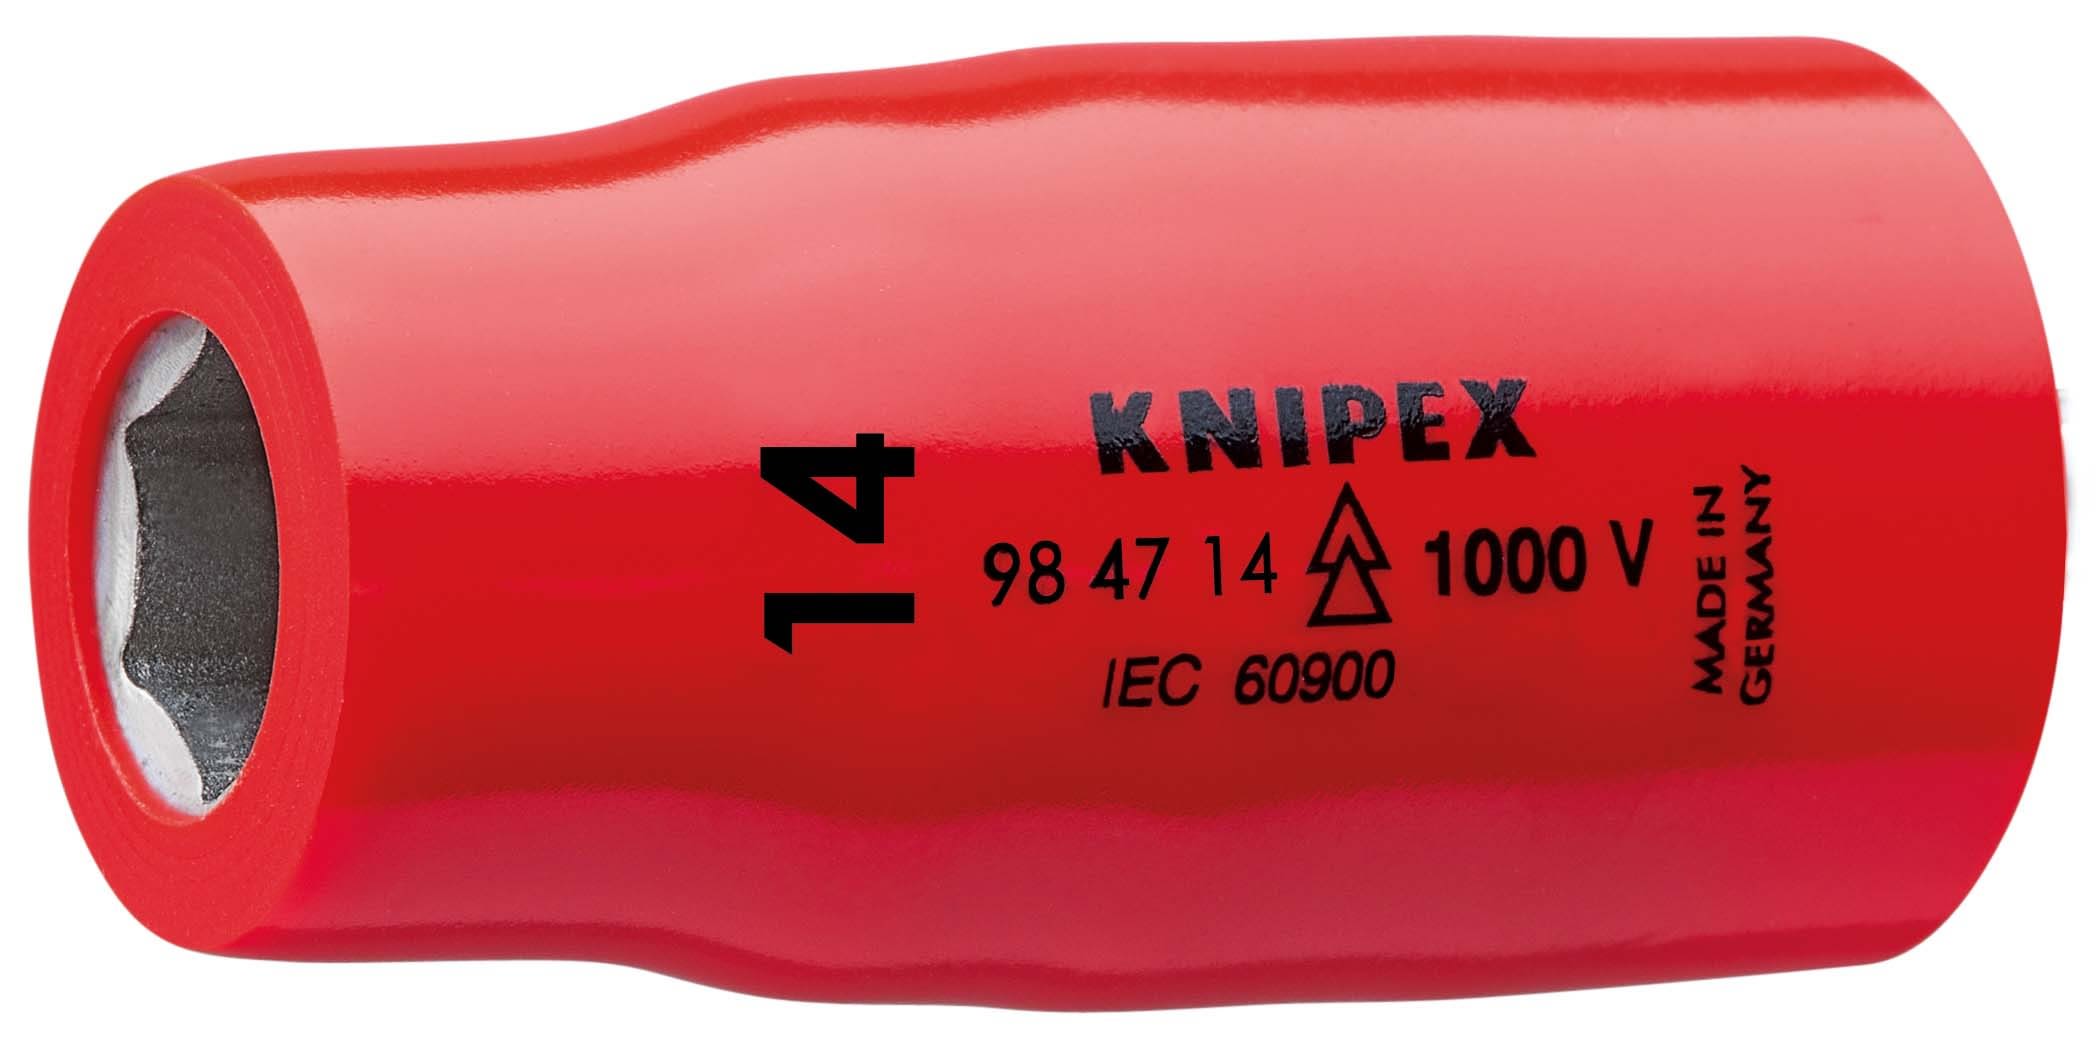 KNIPEX - Douille - 14mm - Carre femelle 1-2 - 6 pans - Gainage surmoule isole 1000V